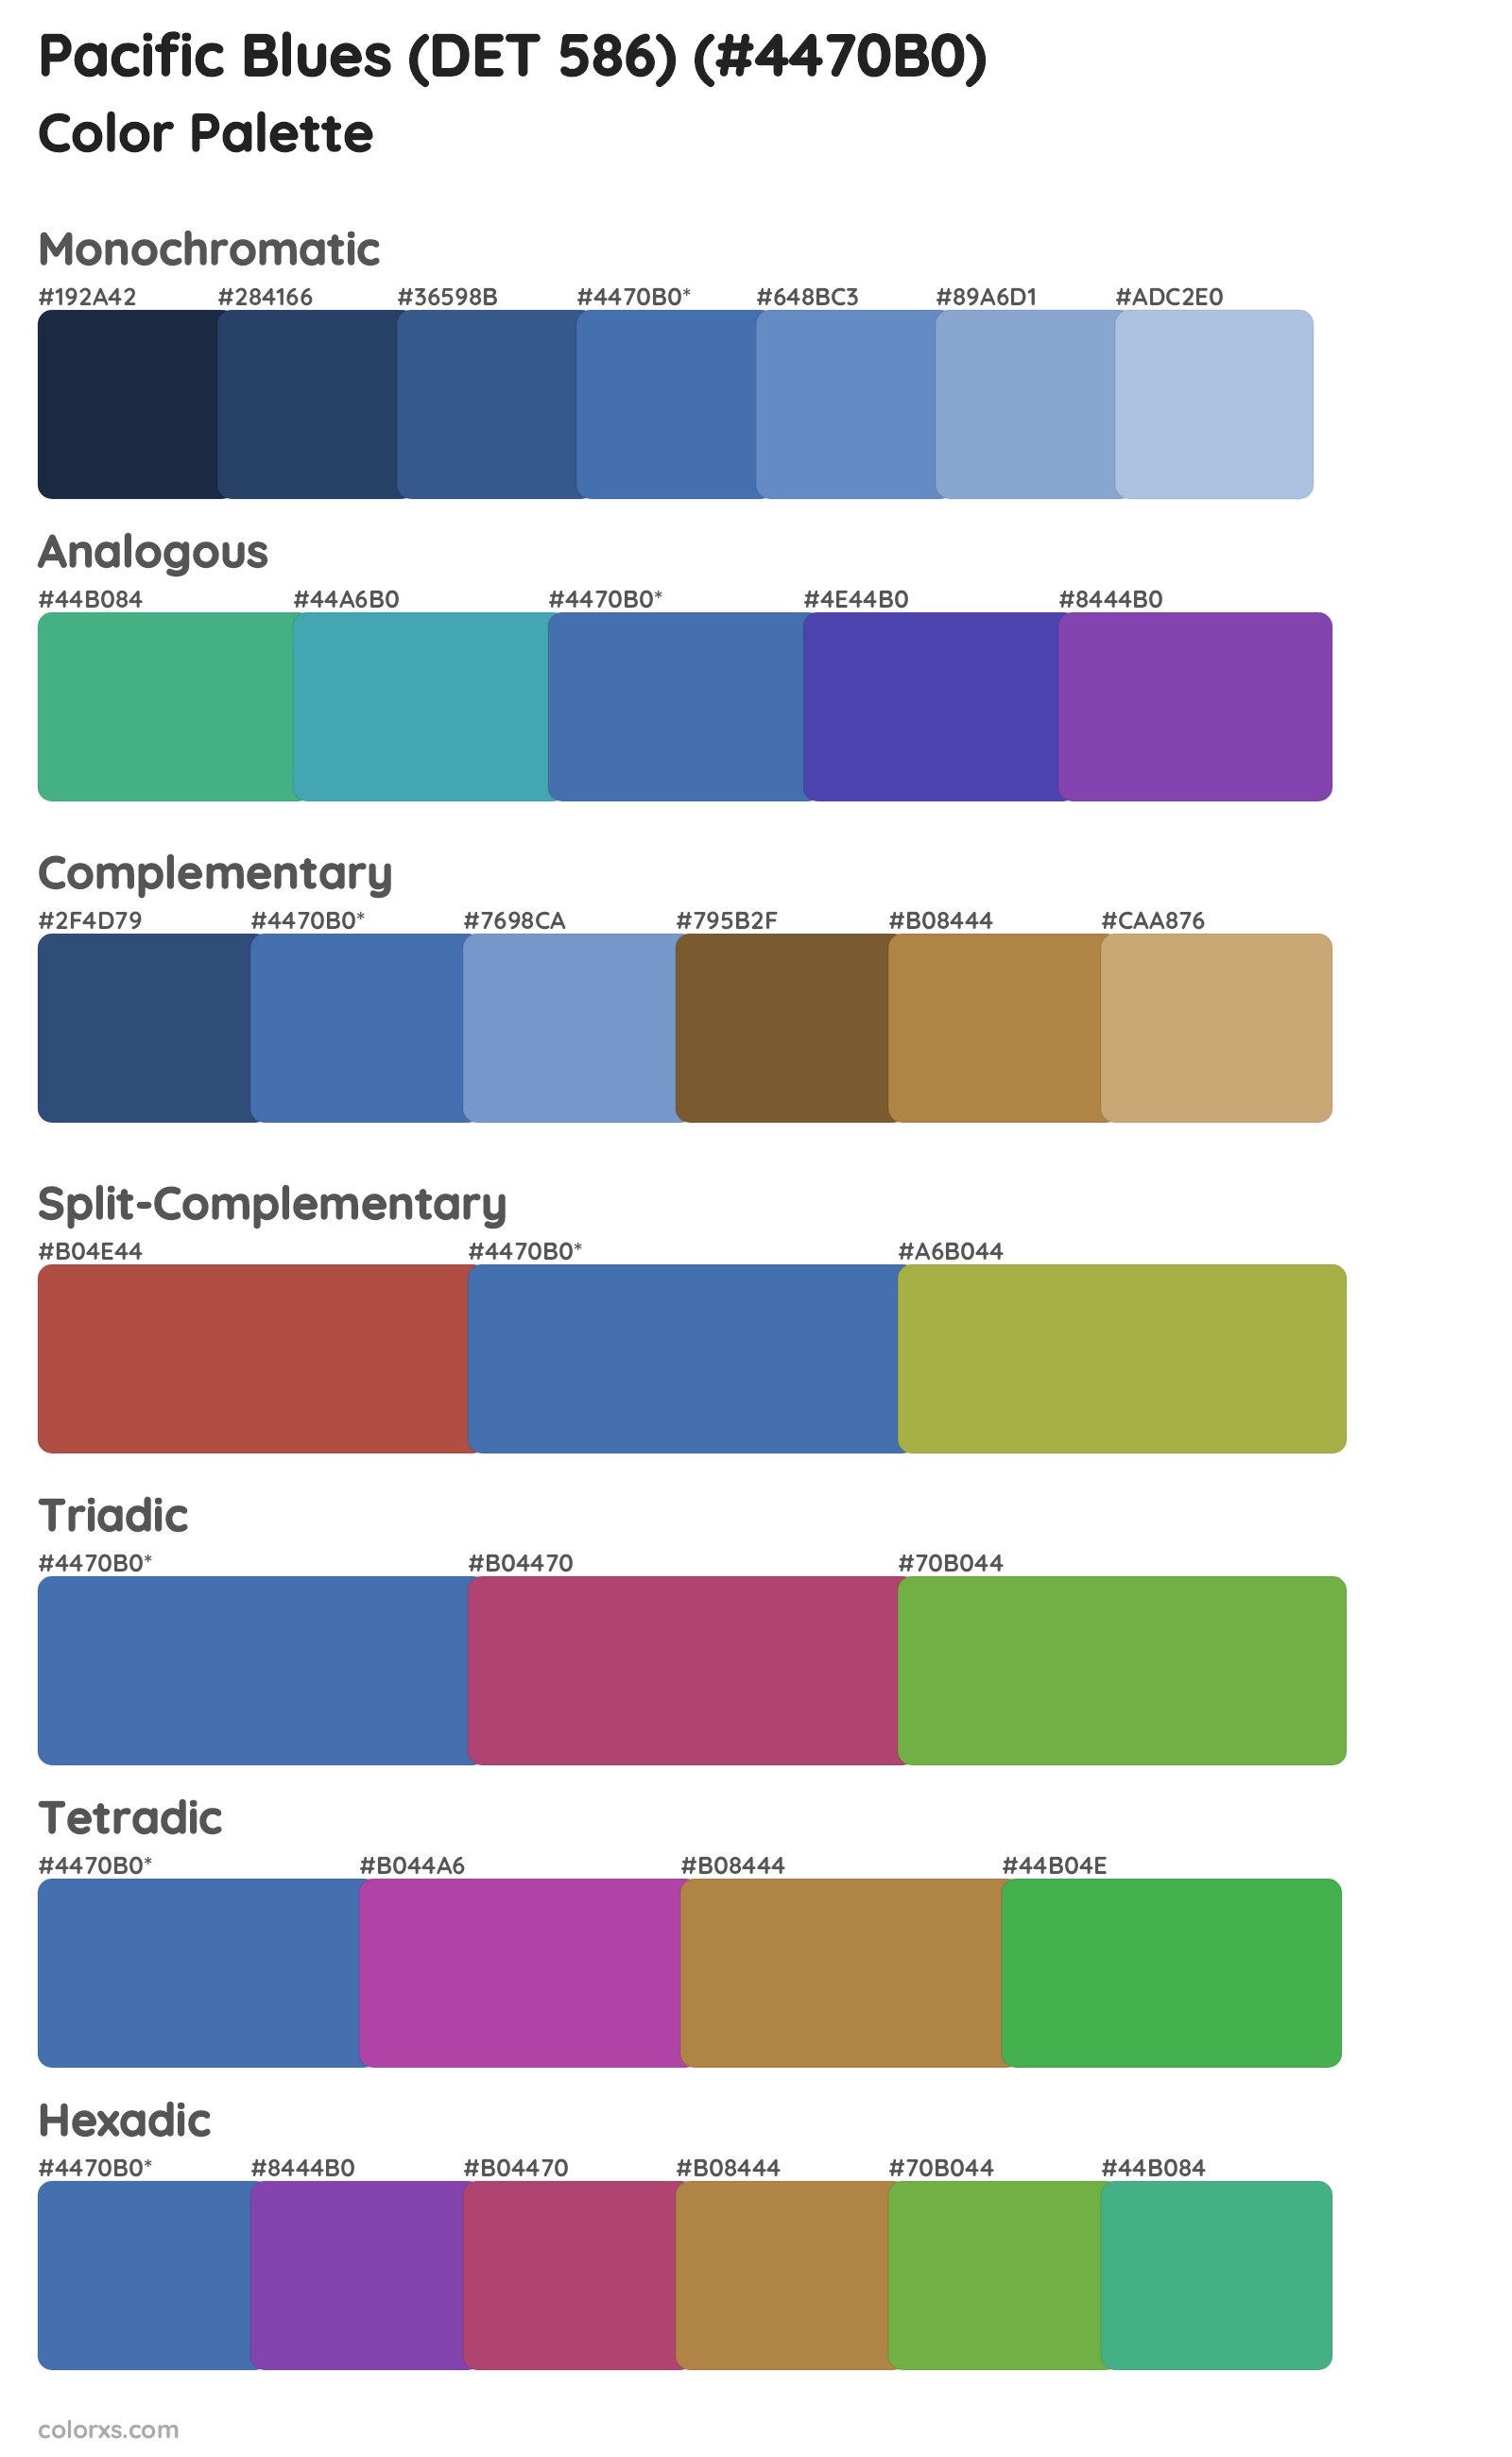 Pacific Blues (DET 586) Color Scheme Palettes